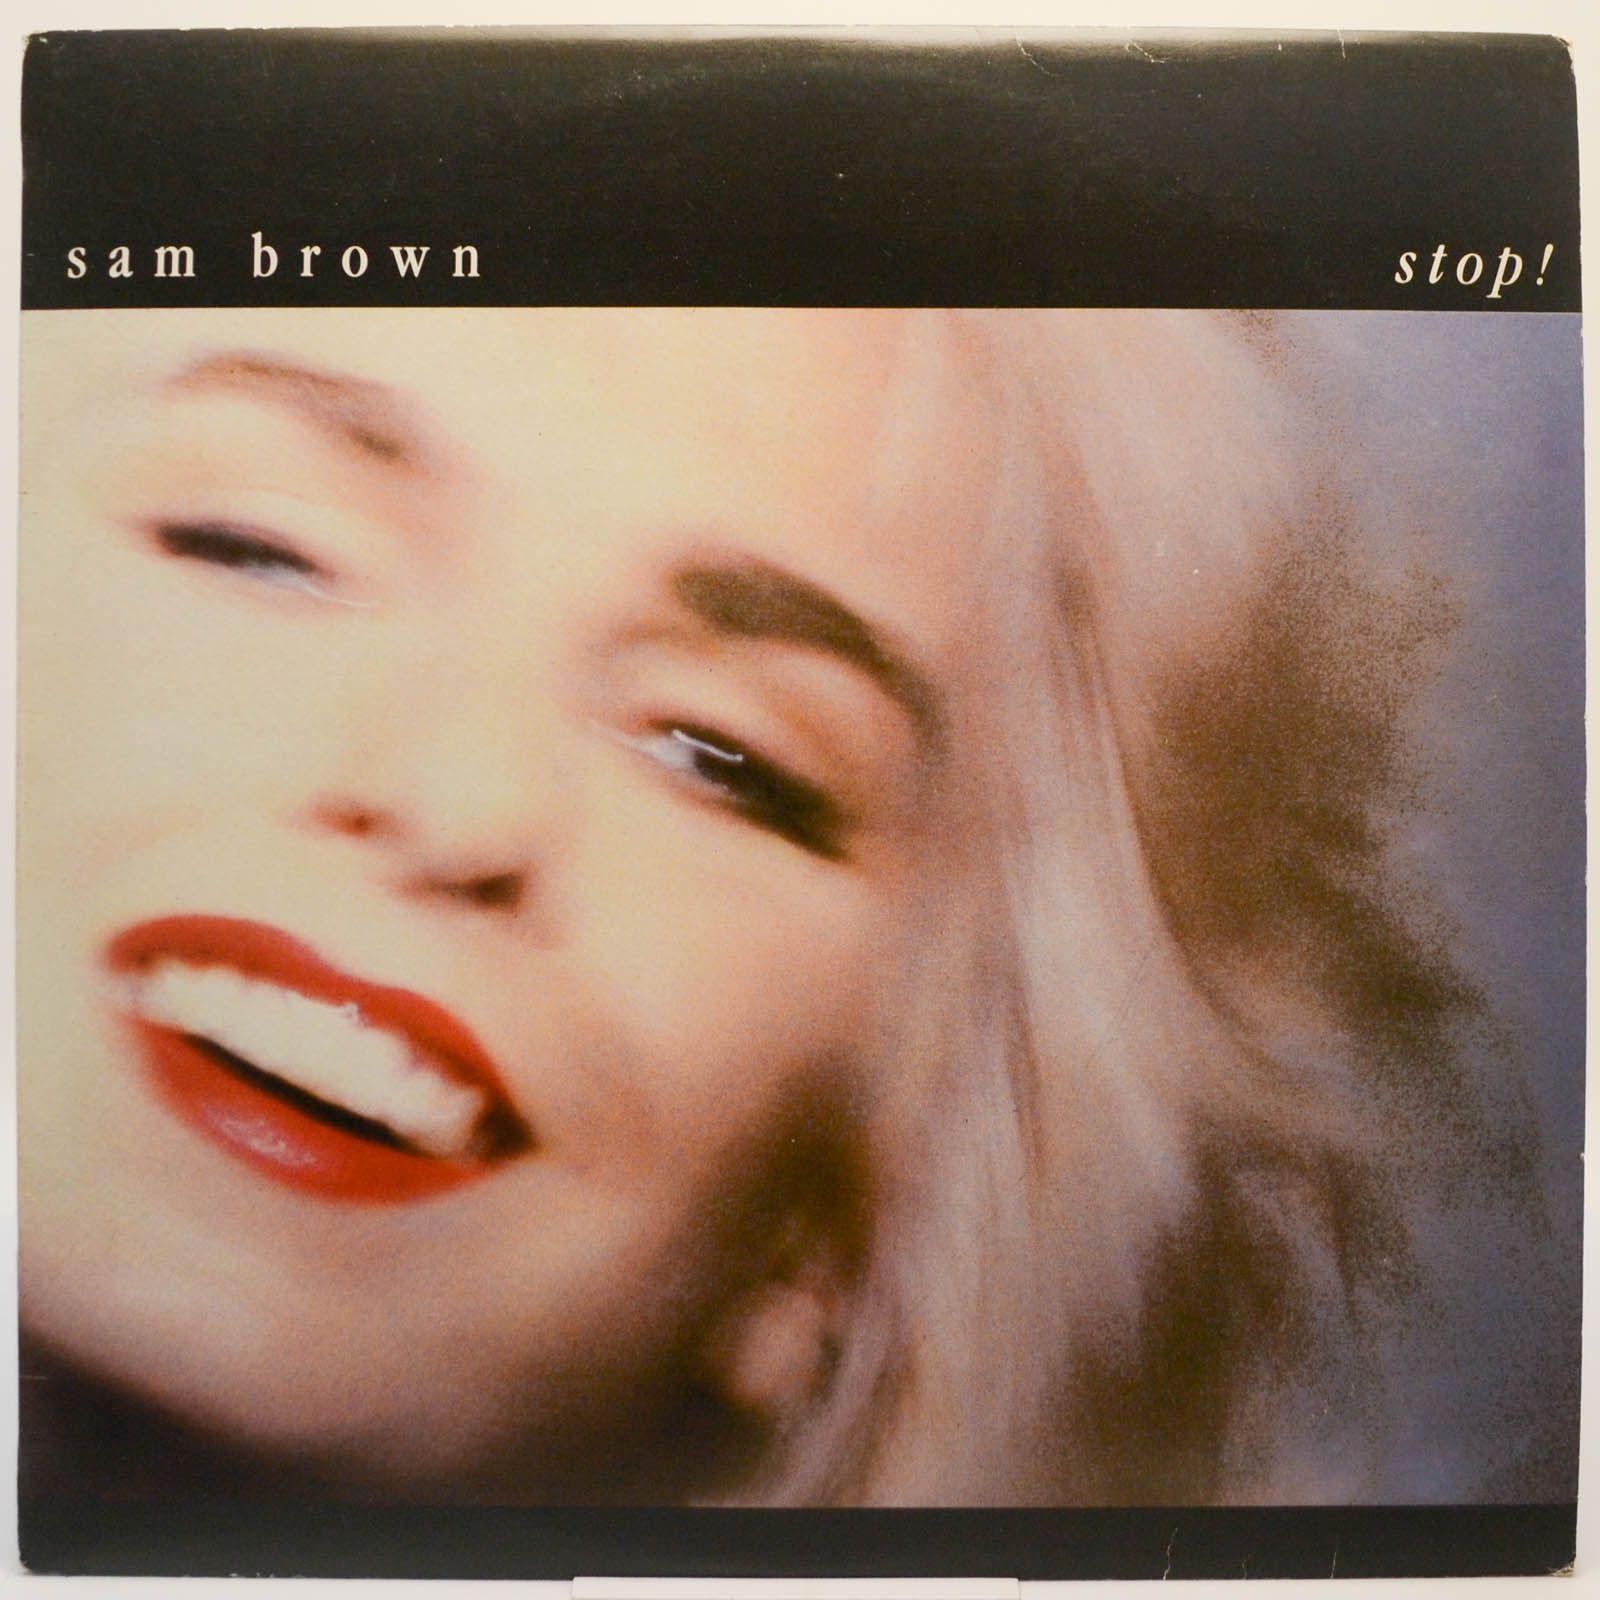 Sam Brown | Virgin Fibre | delivering Awesome